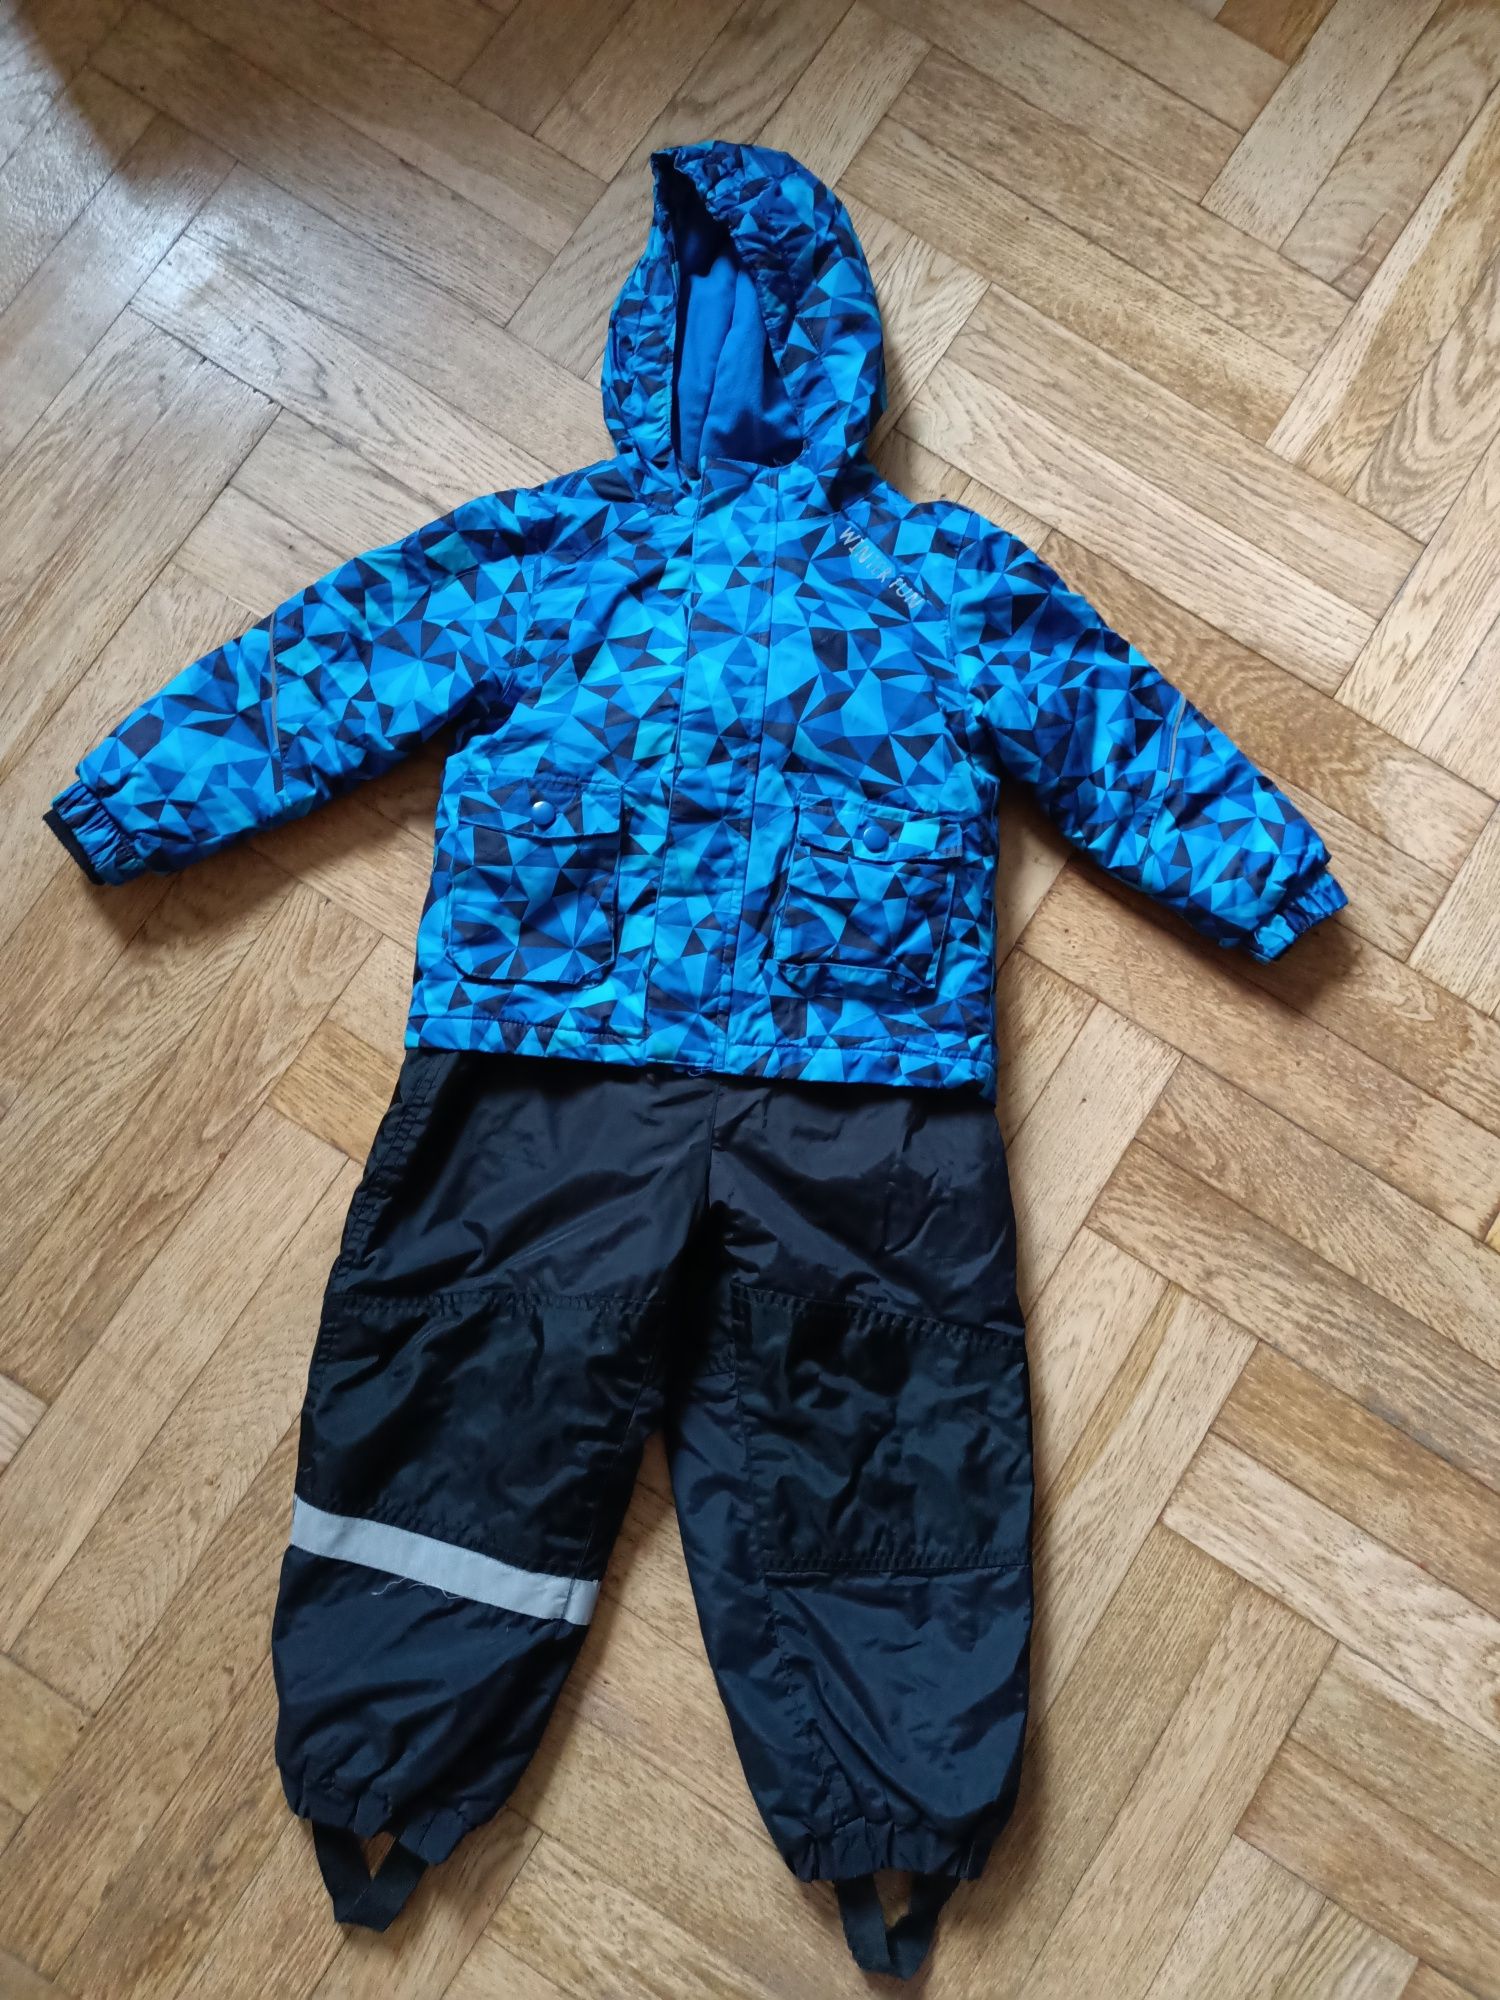 Zestaw zimowy dla chłopca 98/104. Spodnie i kurtka narciarska